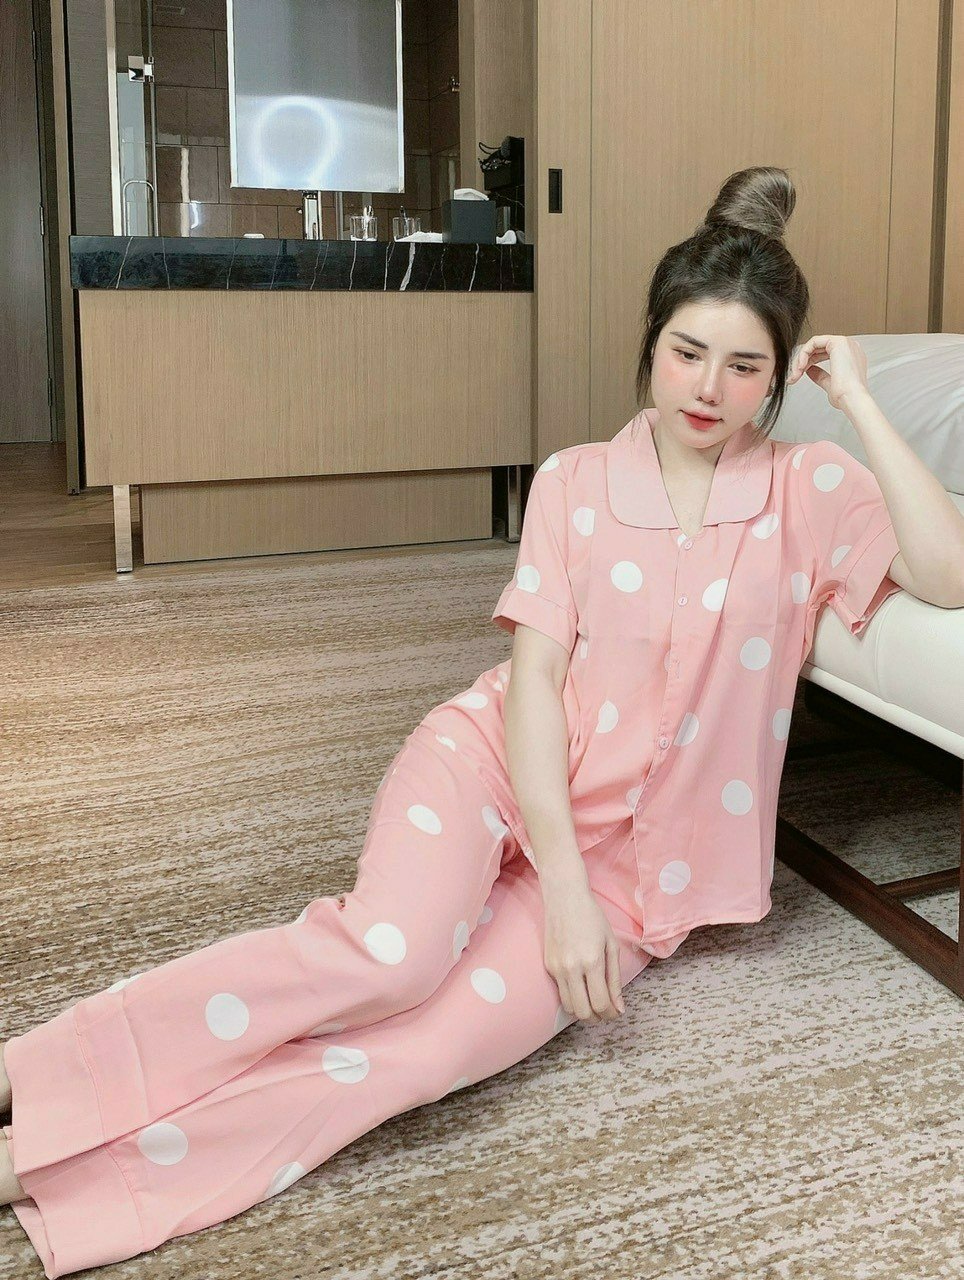 Bộ Pijama Nữ Mặc Ở Nhà chất lụa mịn mát, ít nhăn. Mặc ở nhà hoặc đi dạo đều xinh. Free size 60kg